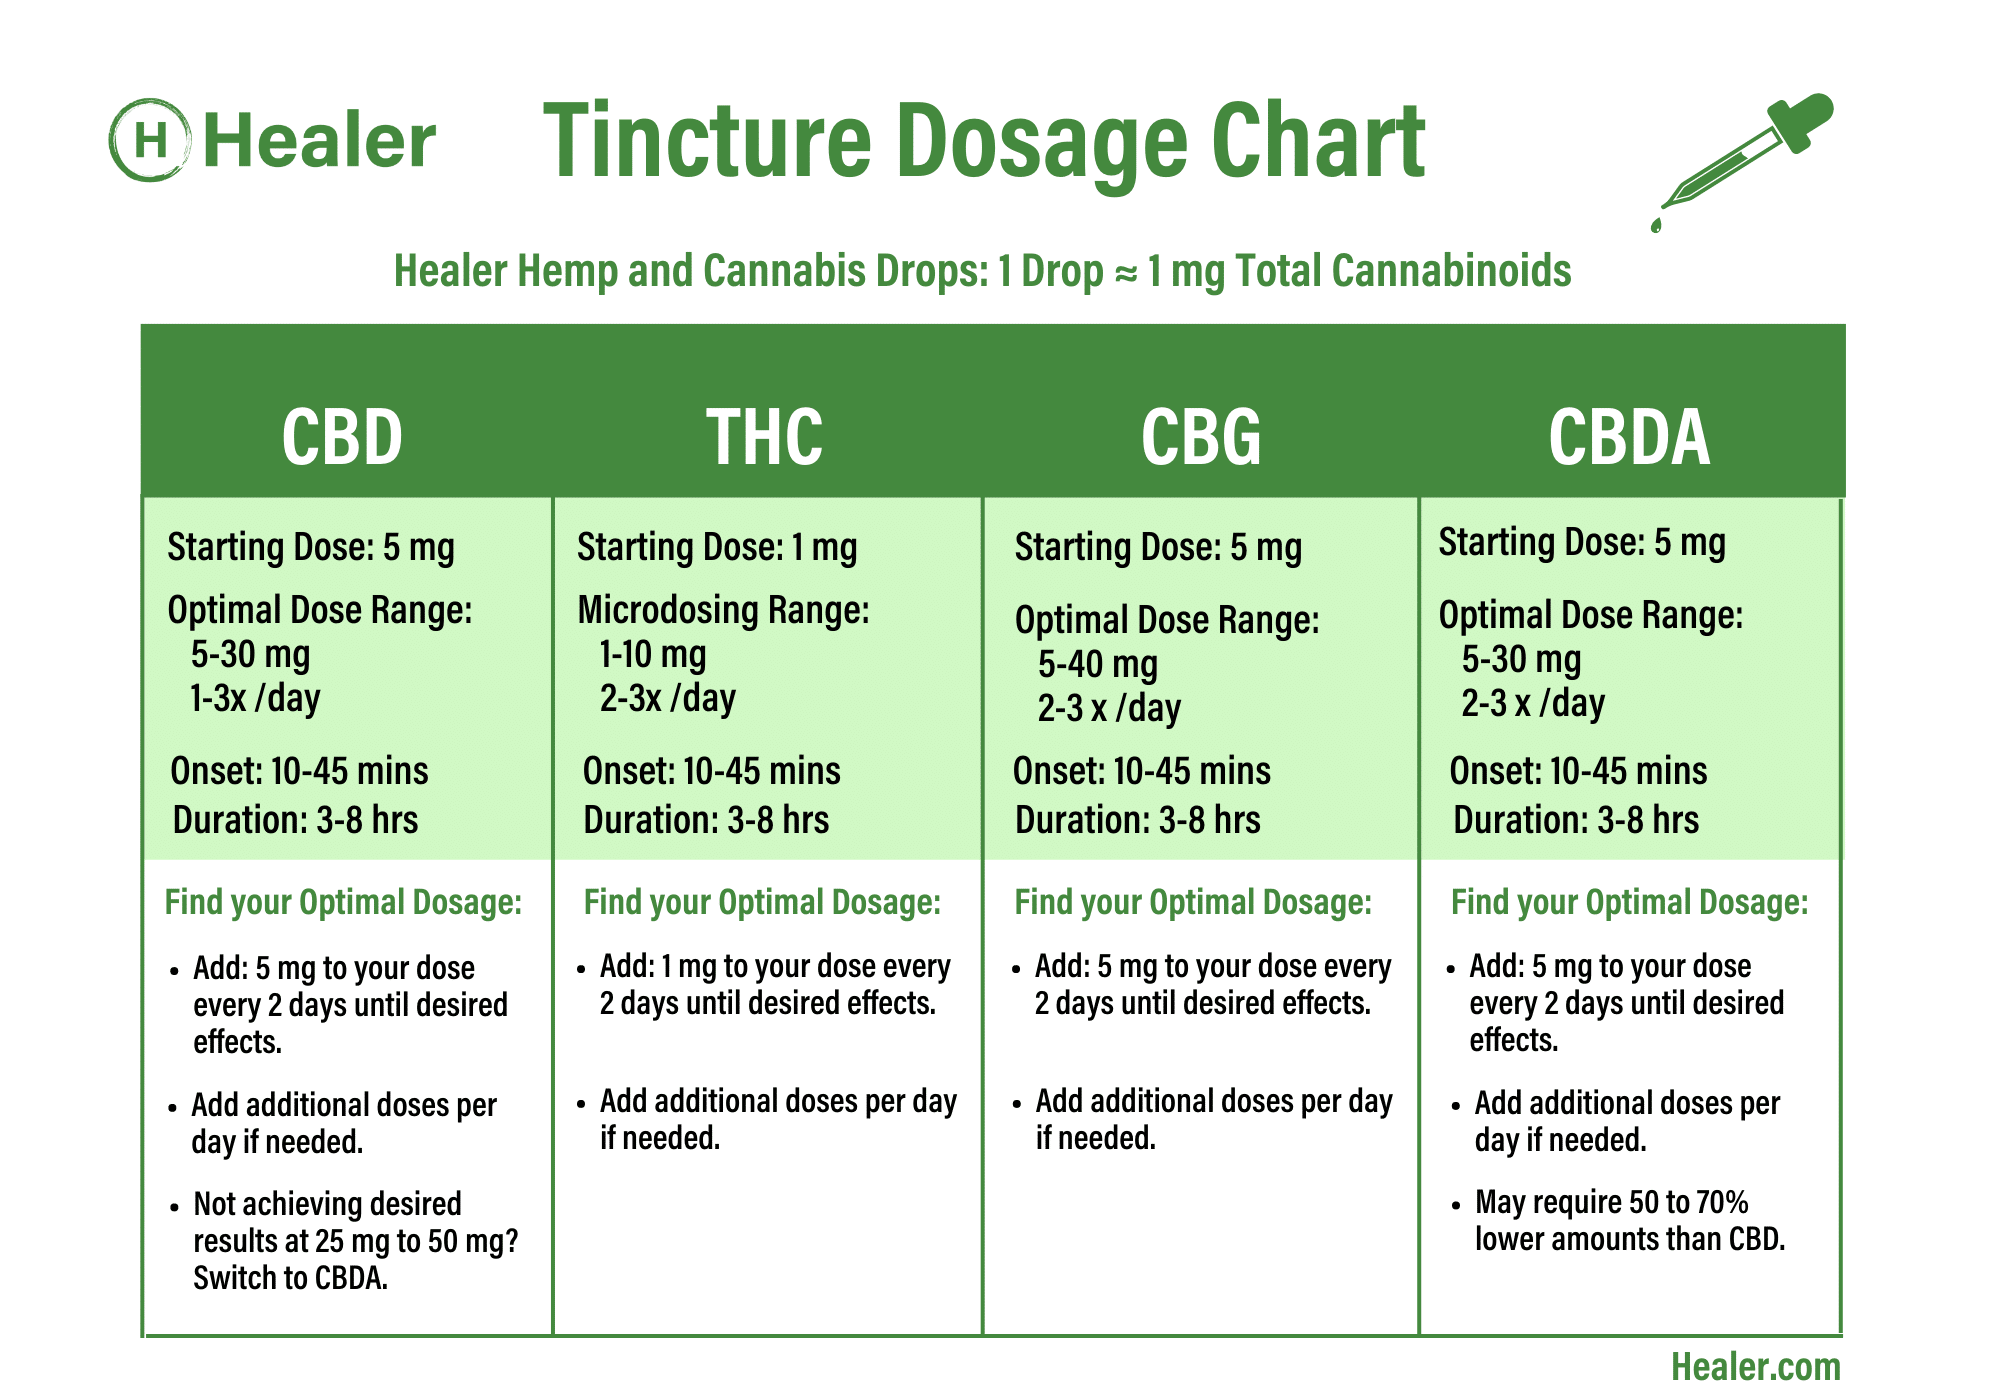 Healer Tincture Dosage Chart